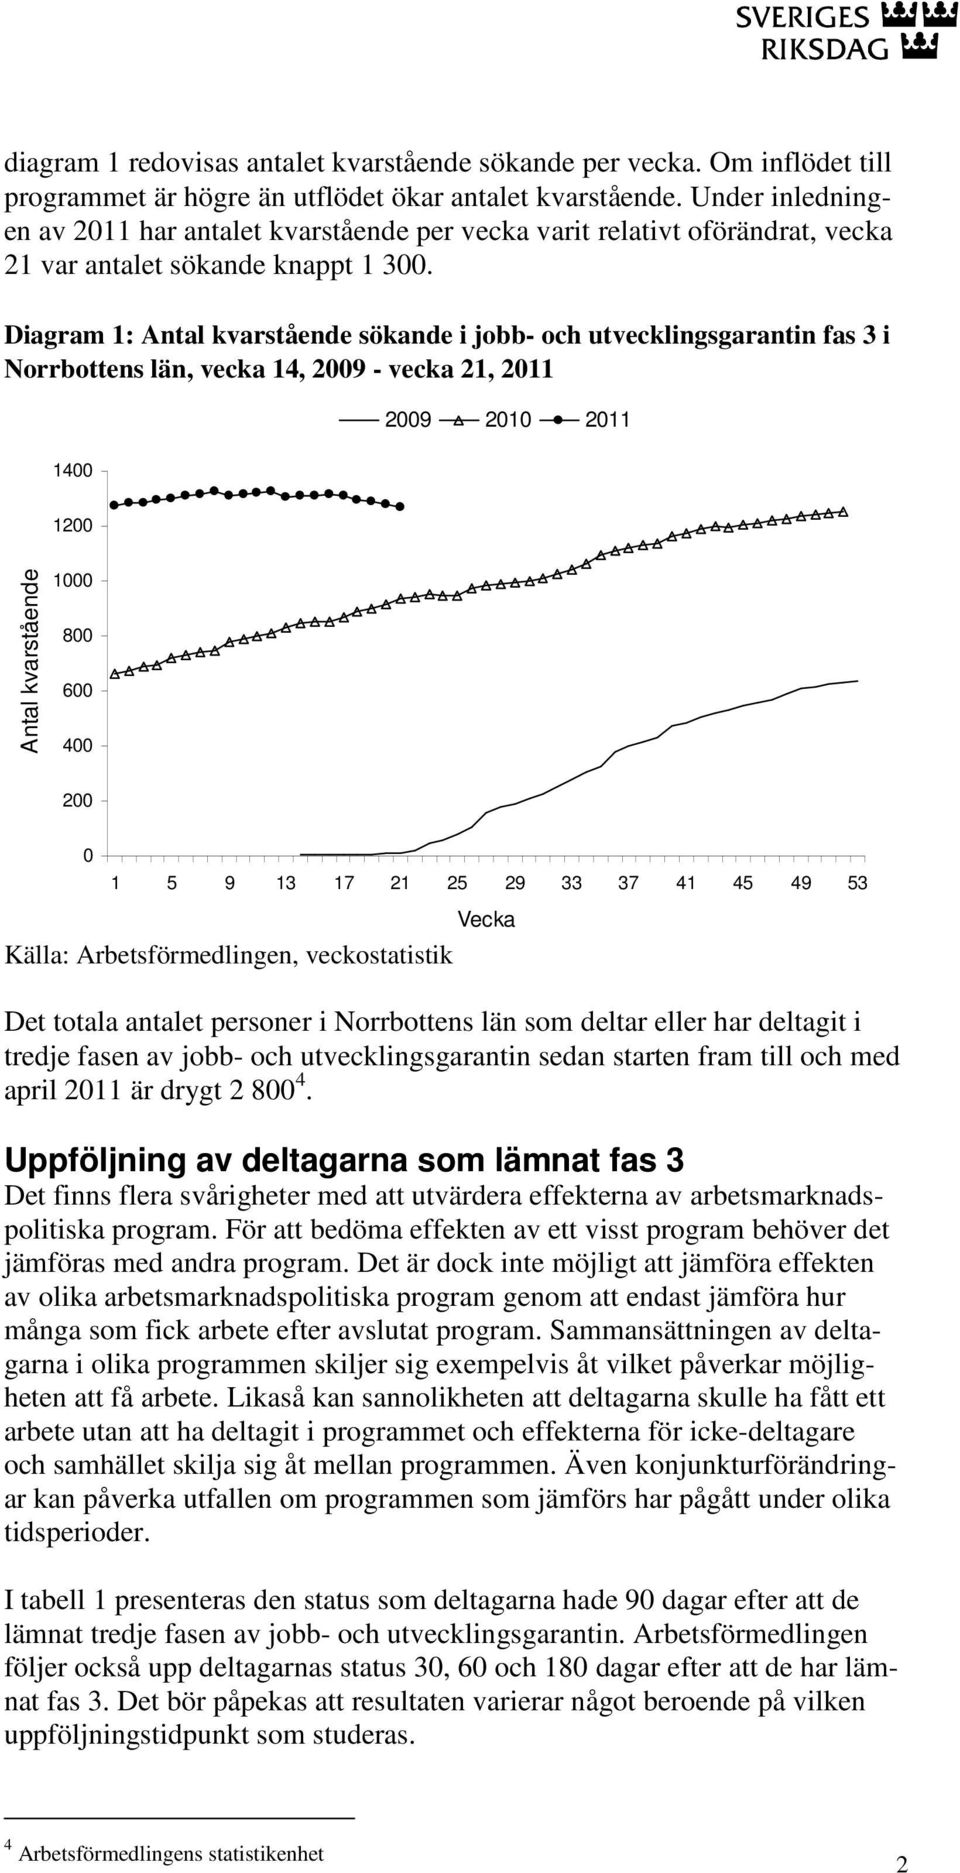 Diagram 1: Antal kvarstående sökande i jobb- och utvecklingsgarantin fas 3 i Norrbottens län, vecka 14, 2009 - vecka 21, 2011 1400 2009 2010 2011 1200 Antal kvarstående 1000 800 600 400 200 0 1 5 9